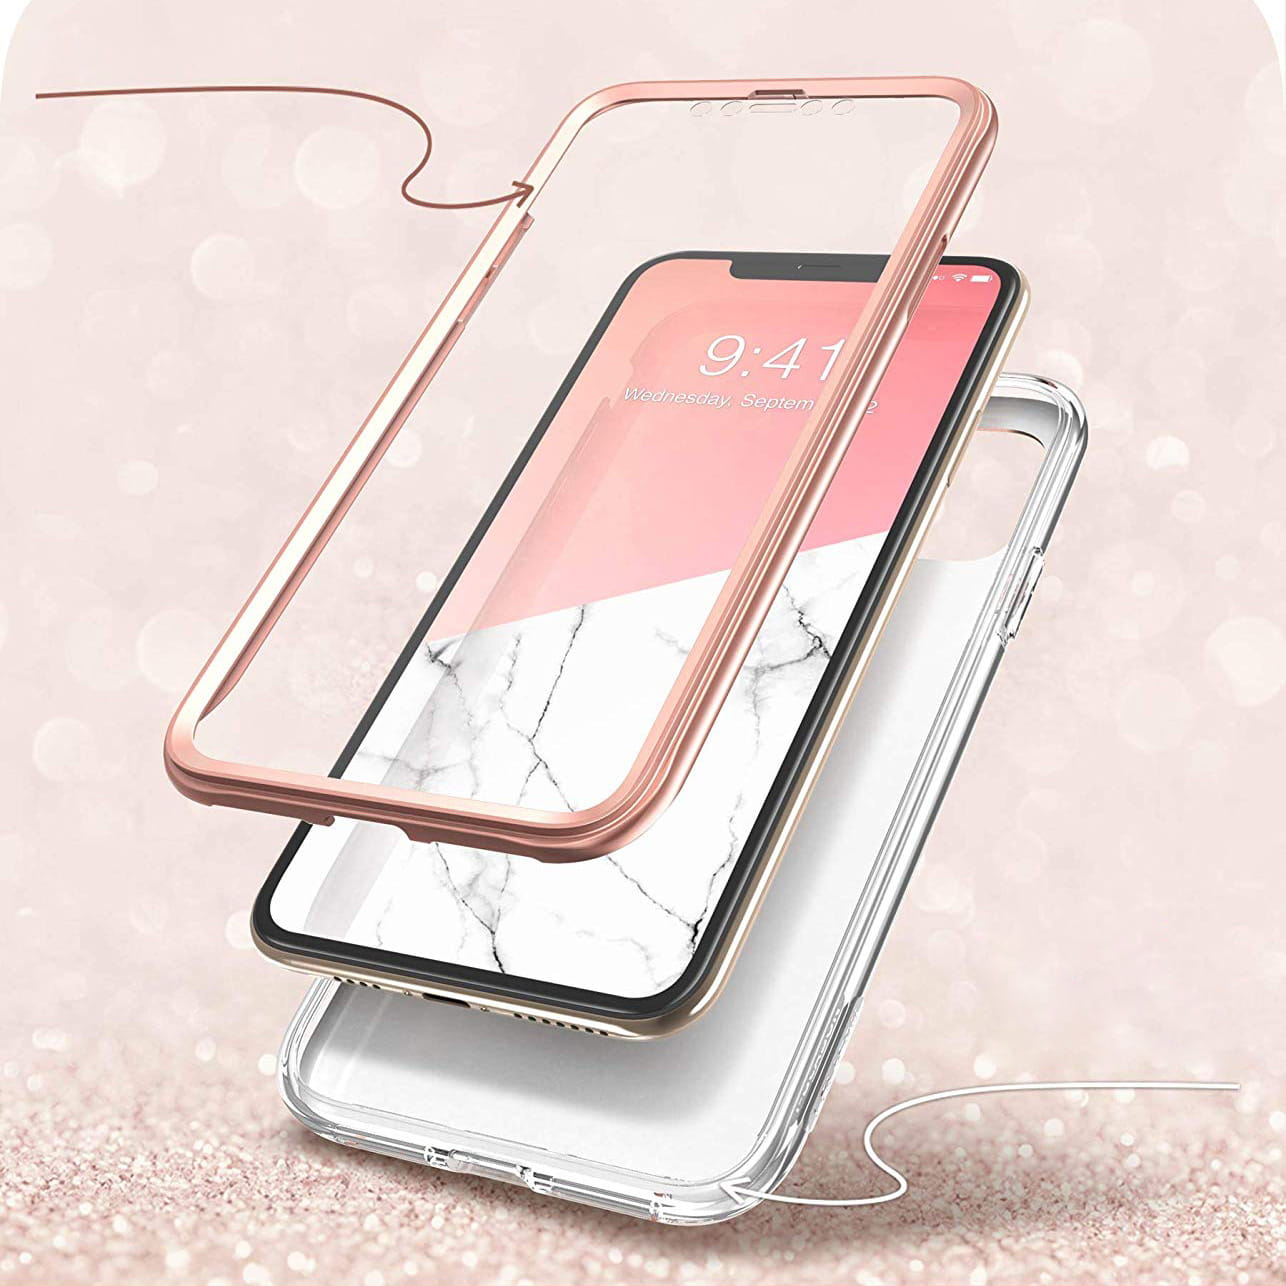 Gepanzerte Schutzhülle mit eingebautem Displayschutz Supcase i-Blason Cosmo für iPhone 11 Pro, rosa.